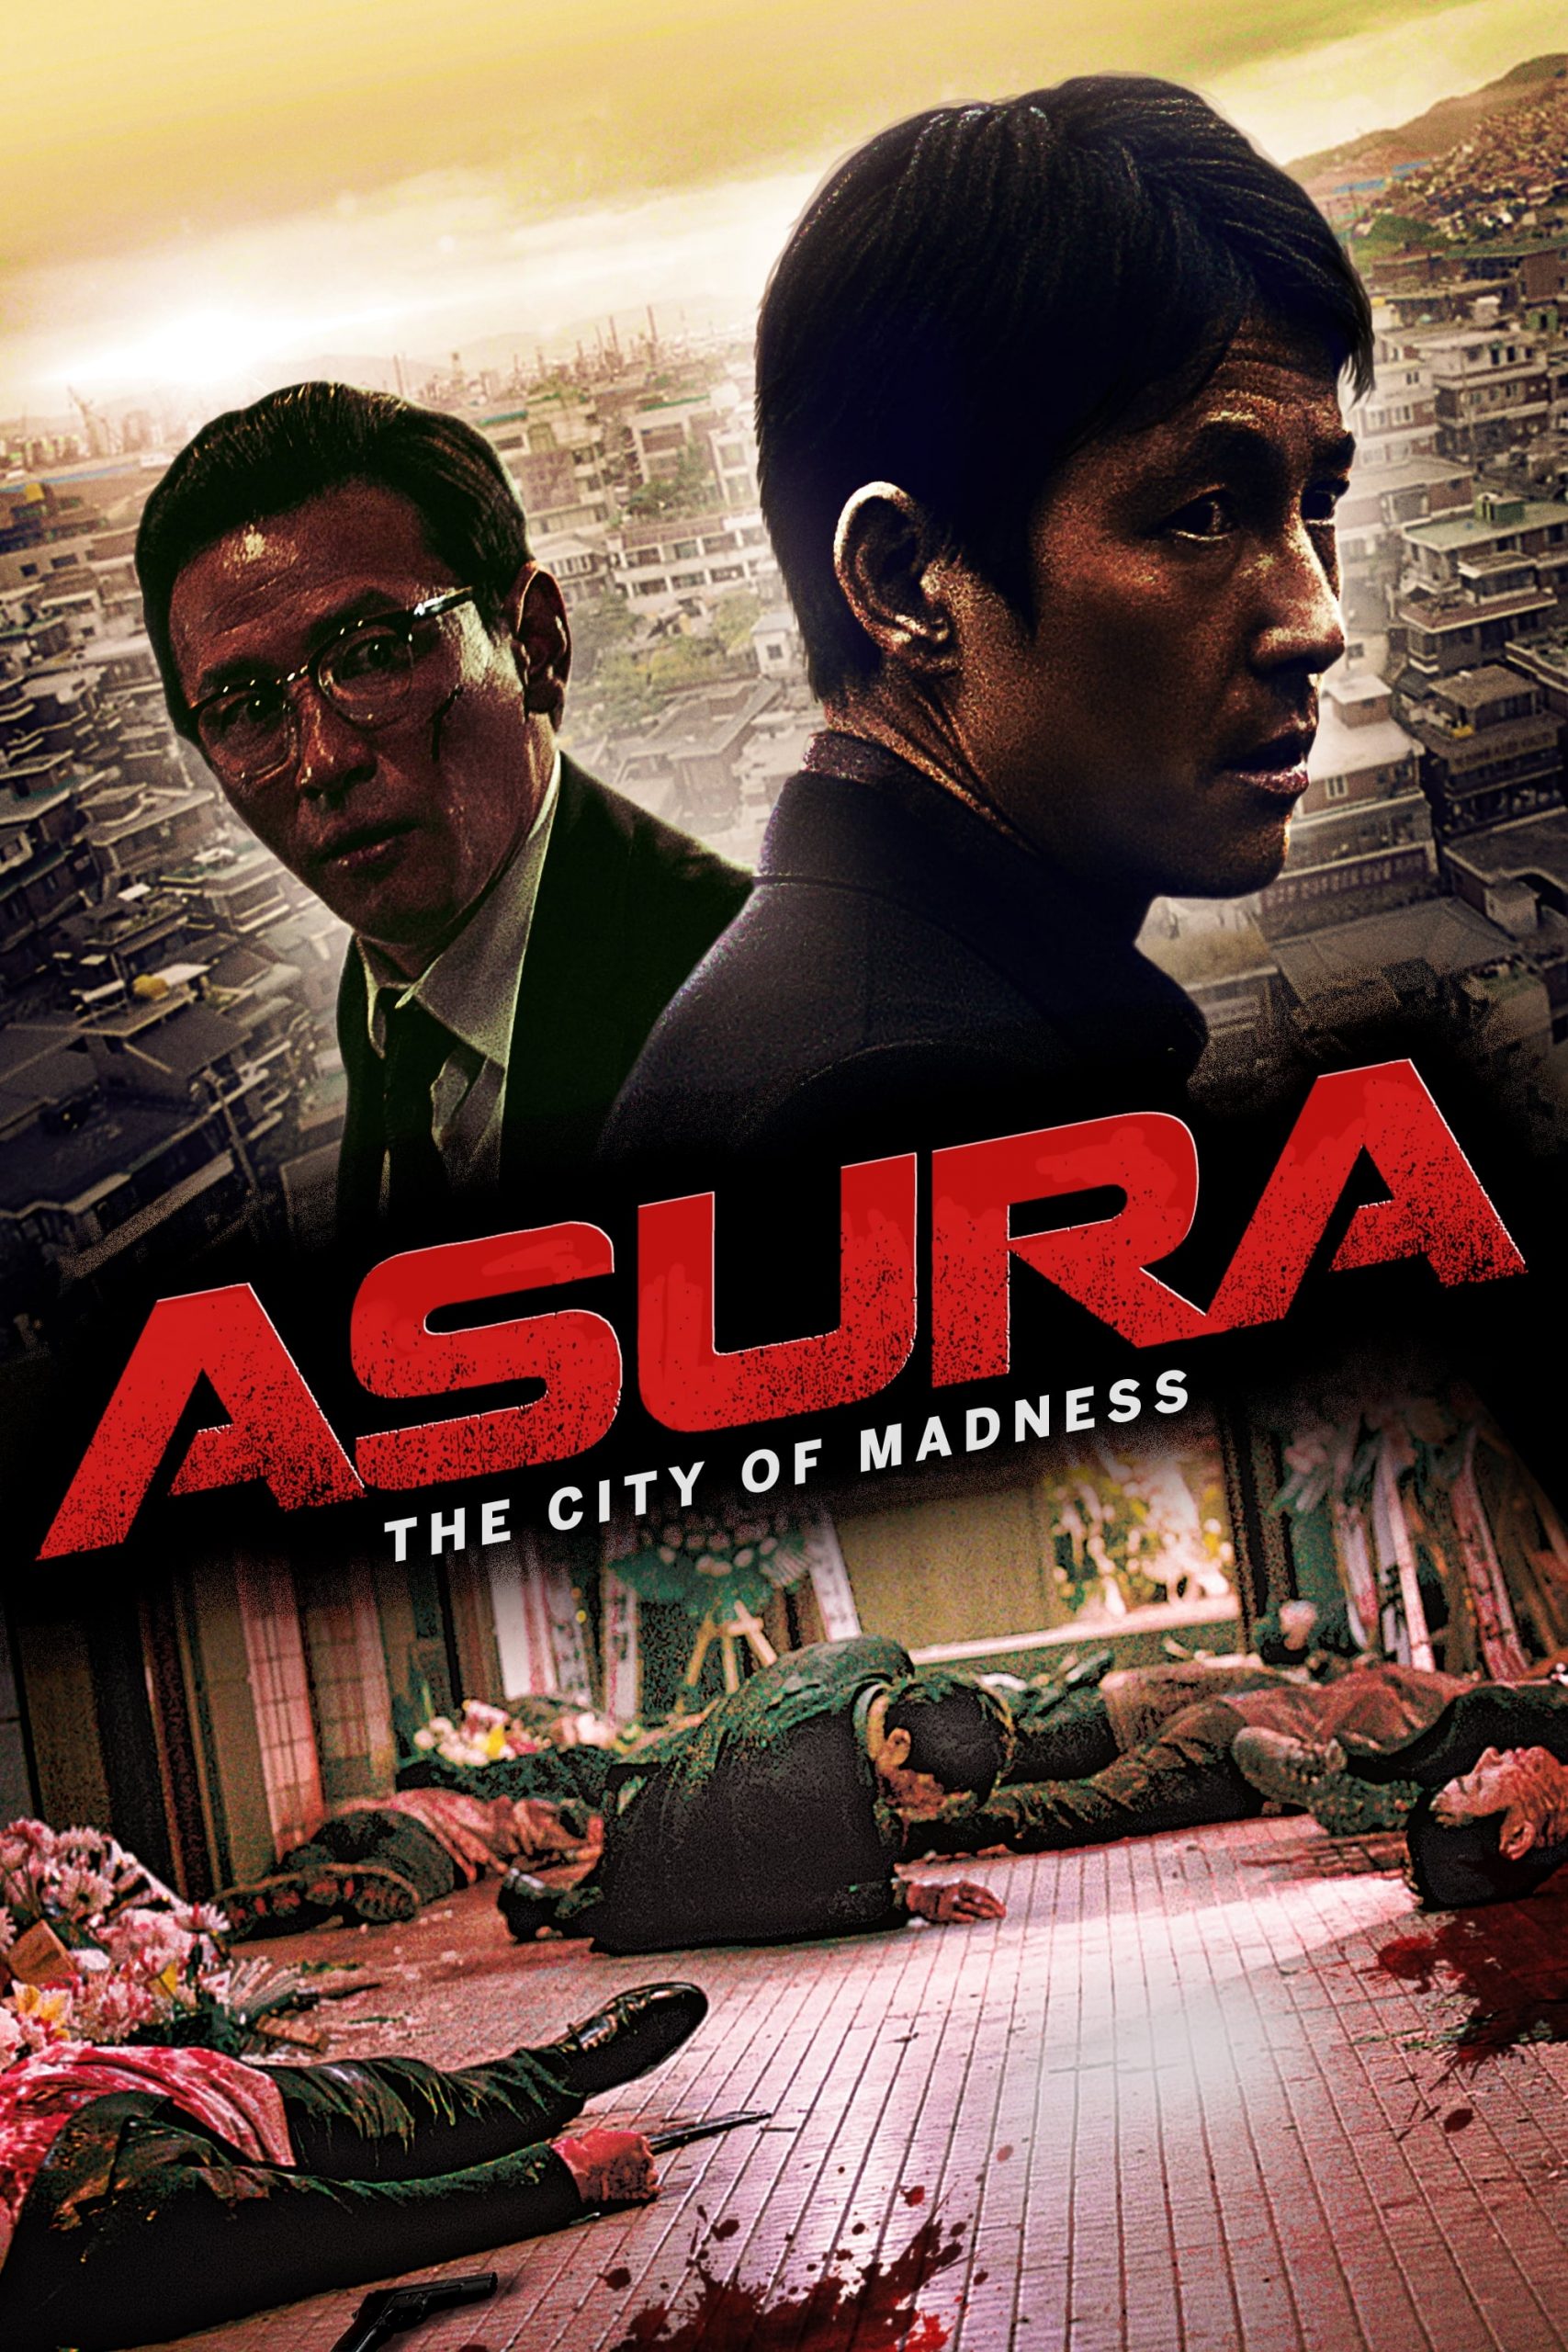 ดูหนังออนไลน์ฟรี Asura The City of Madness (2016) เมืองคนชั่ว